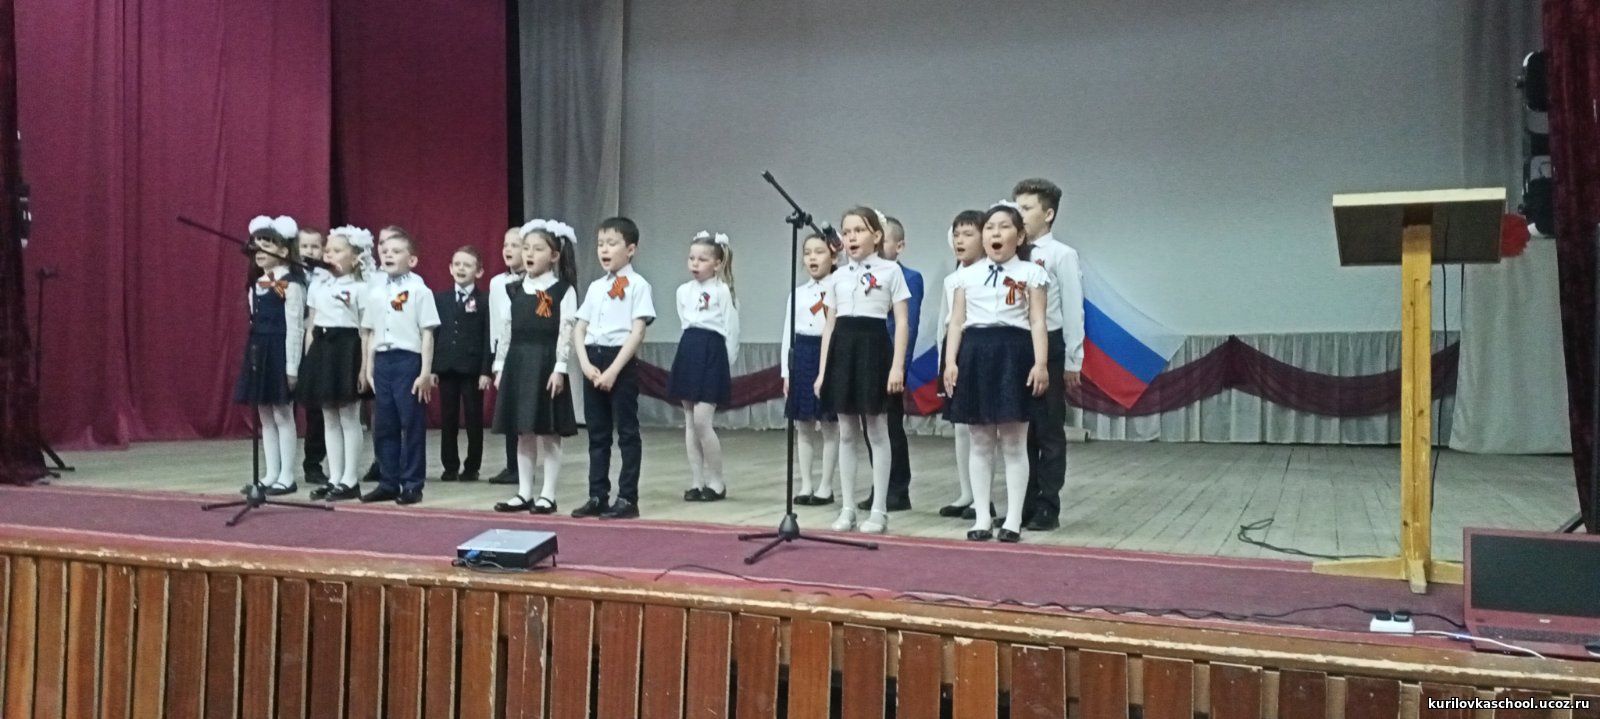 Общешкольный фестиваль патриотической песни «Пою тебе, моя Россия».